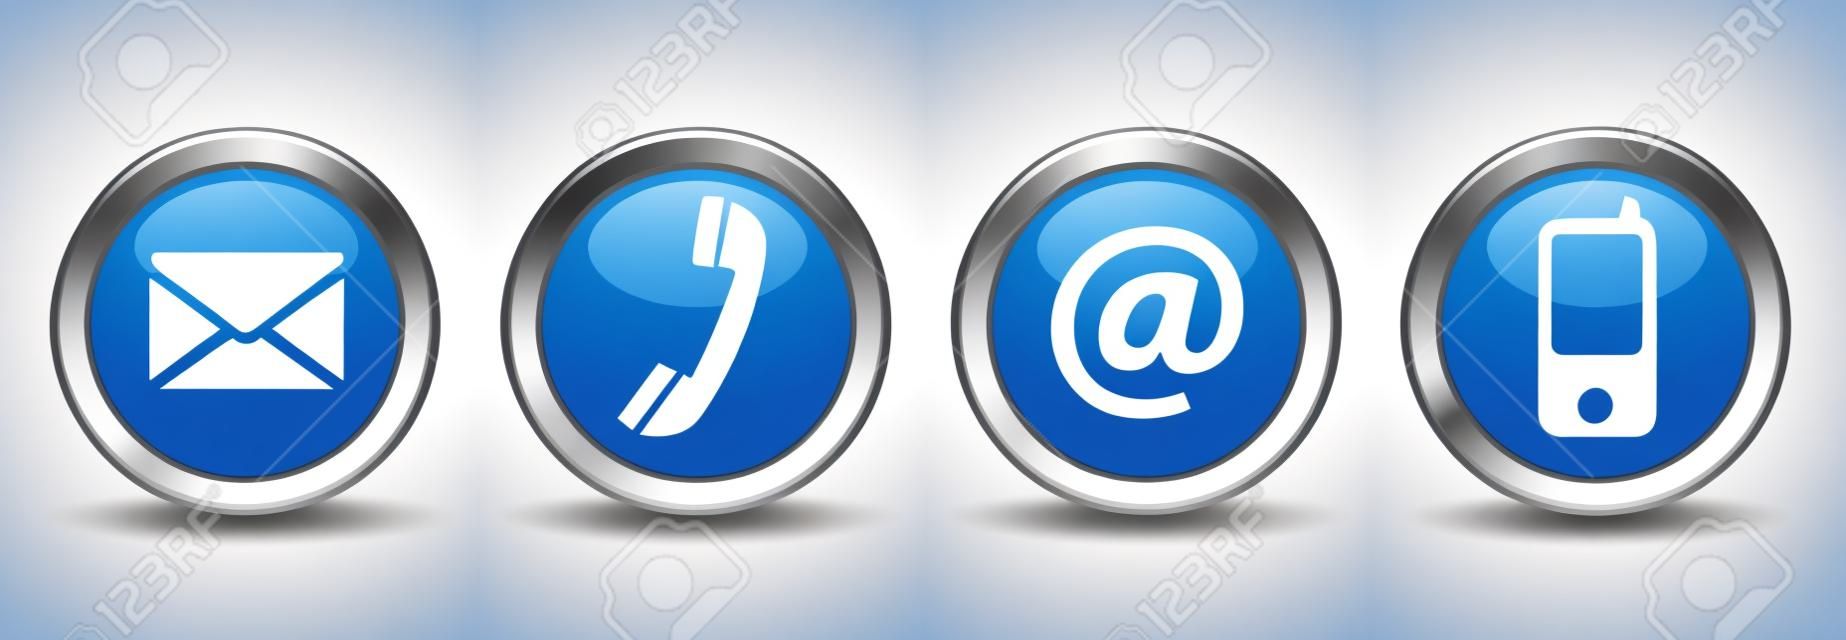 联系我们的网页按钮设置在电话和手机图标上的蓝色银色徽章矢量EPS 10插图白色背景隔离